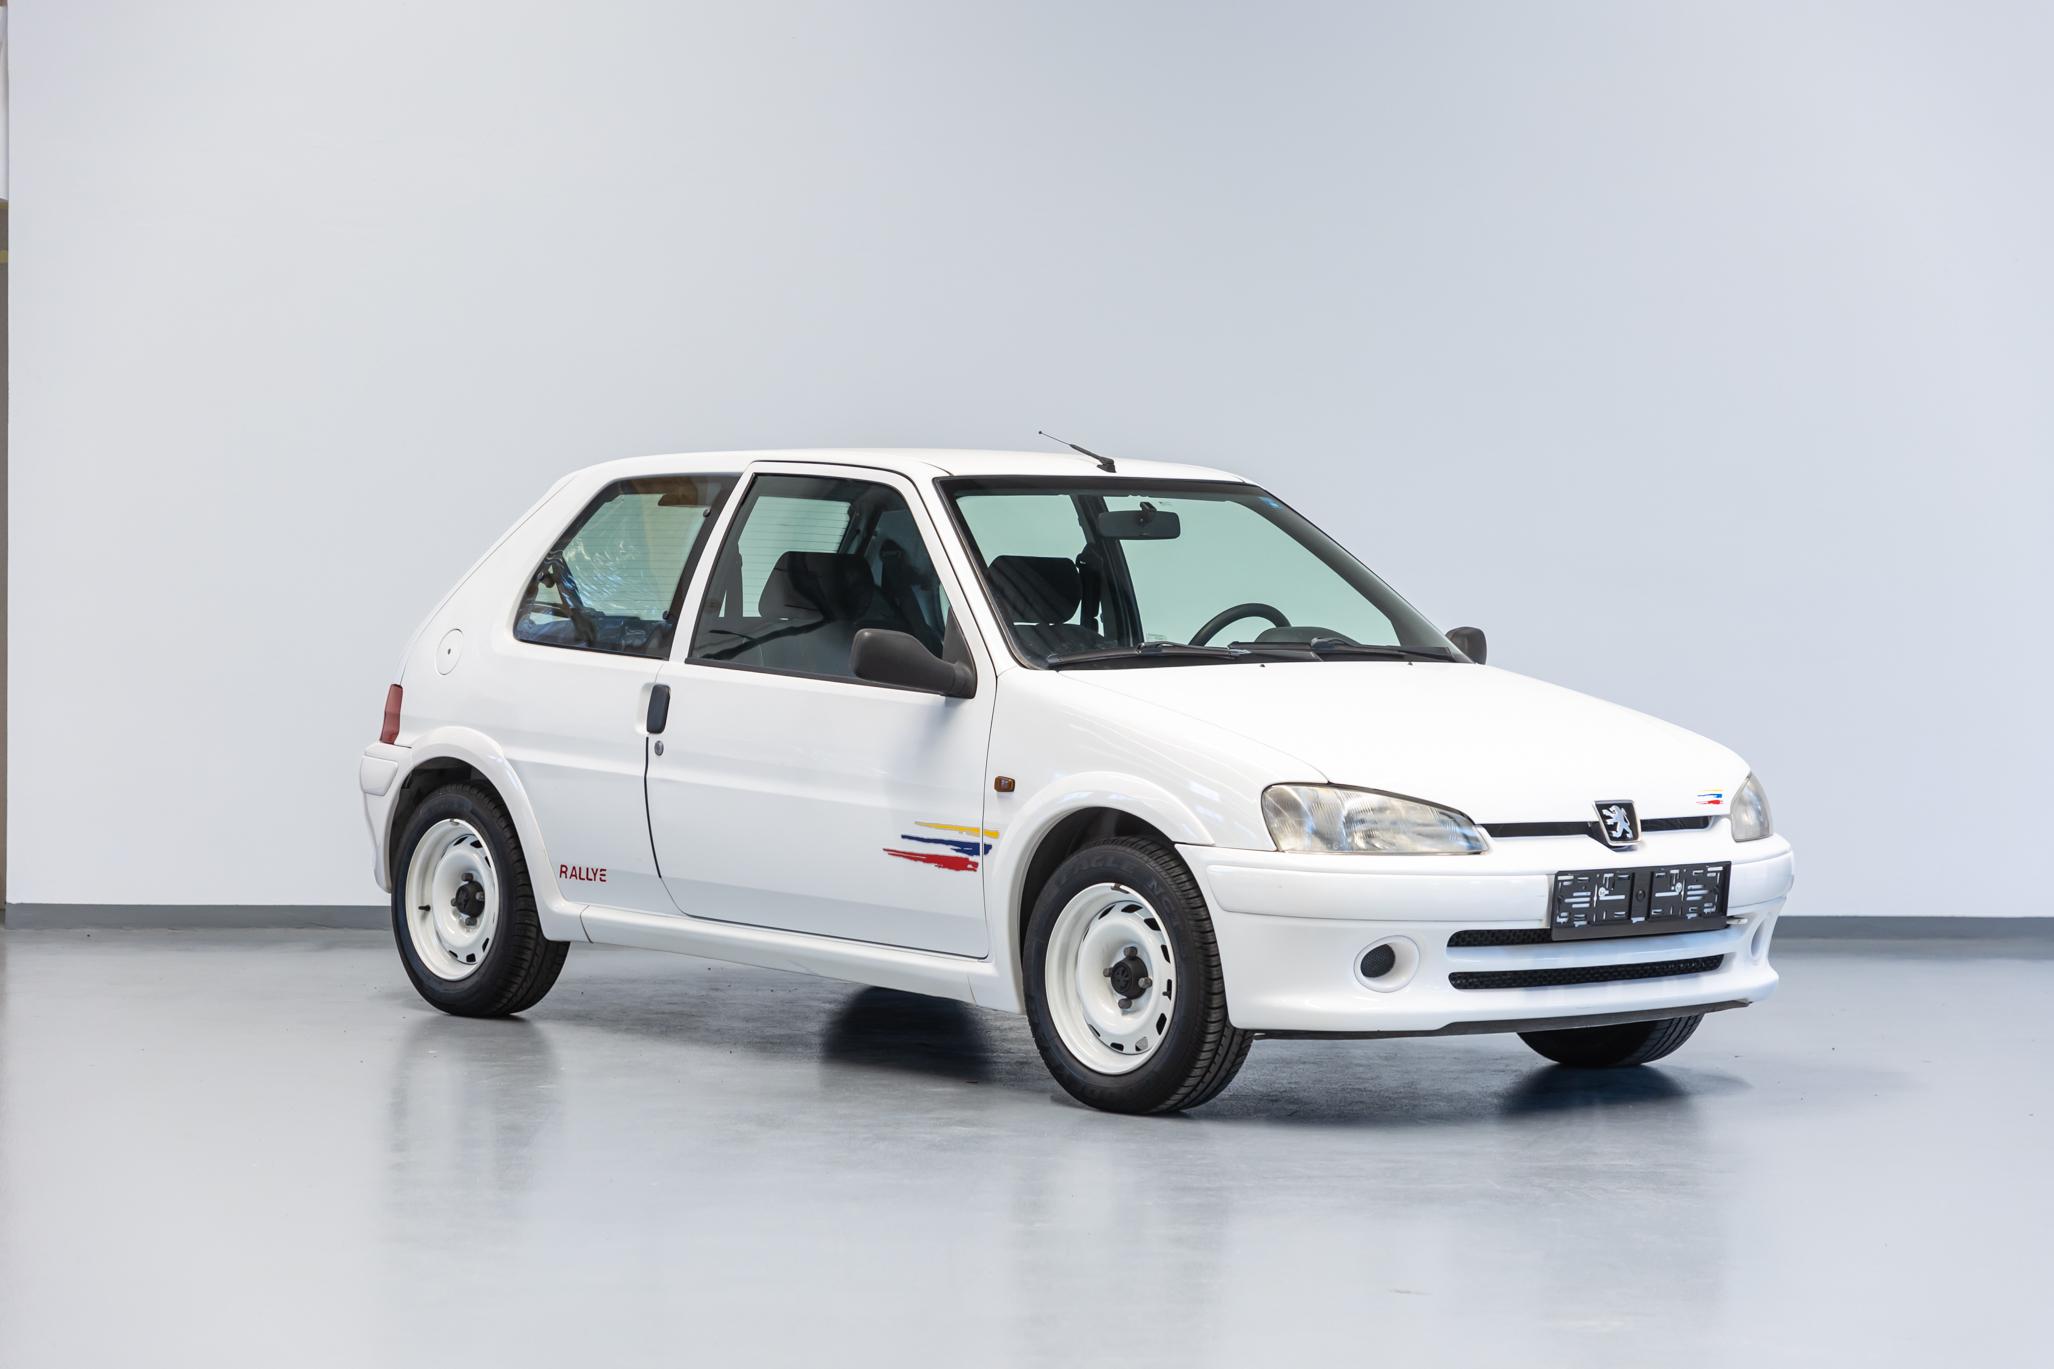 Peugeot 106 Rallye Ph2, 89500kms d'origine – Voiture vendue – CforCar